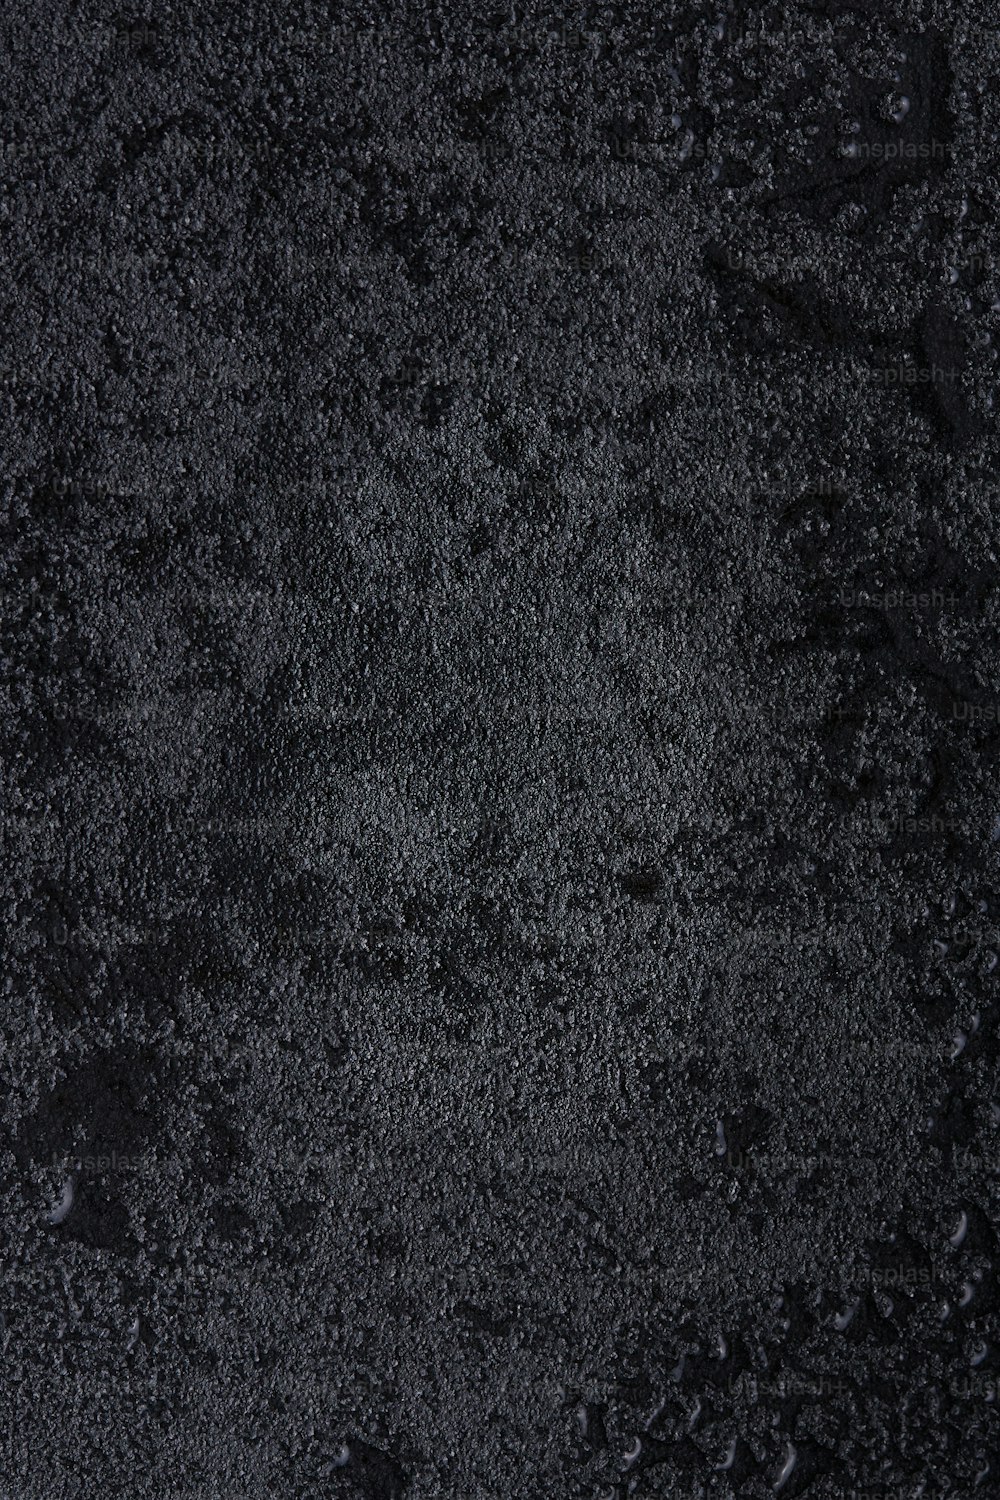 un primer plano de una superficie negra con gotas de agua